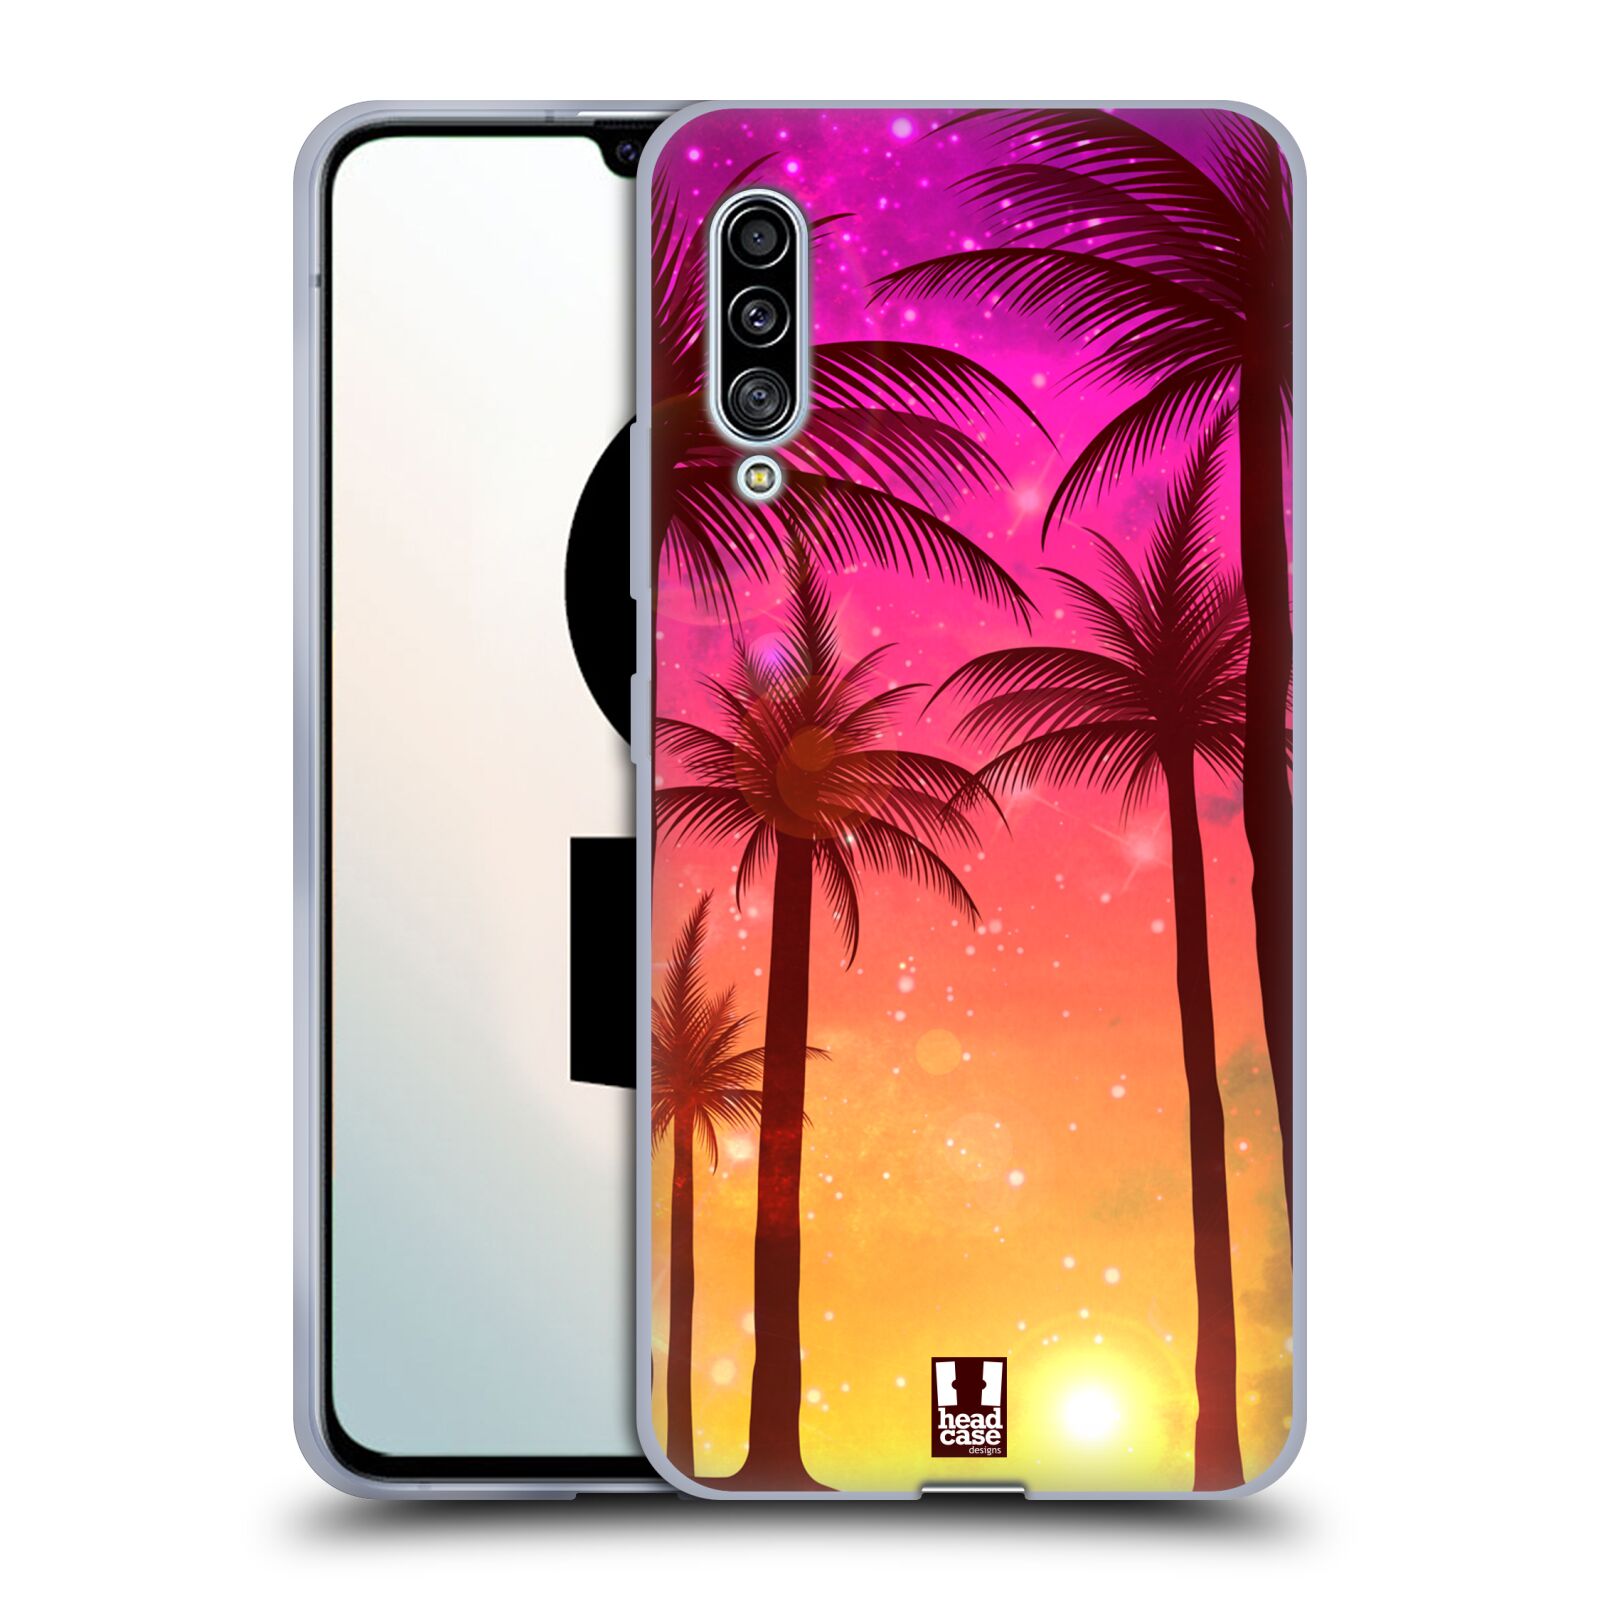 Plastový obal HEAD CASE na mobil Samsung Galaxy A90 5G vzor Kreslený motiv silueta moře a palmy RŮŽOVÁ